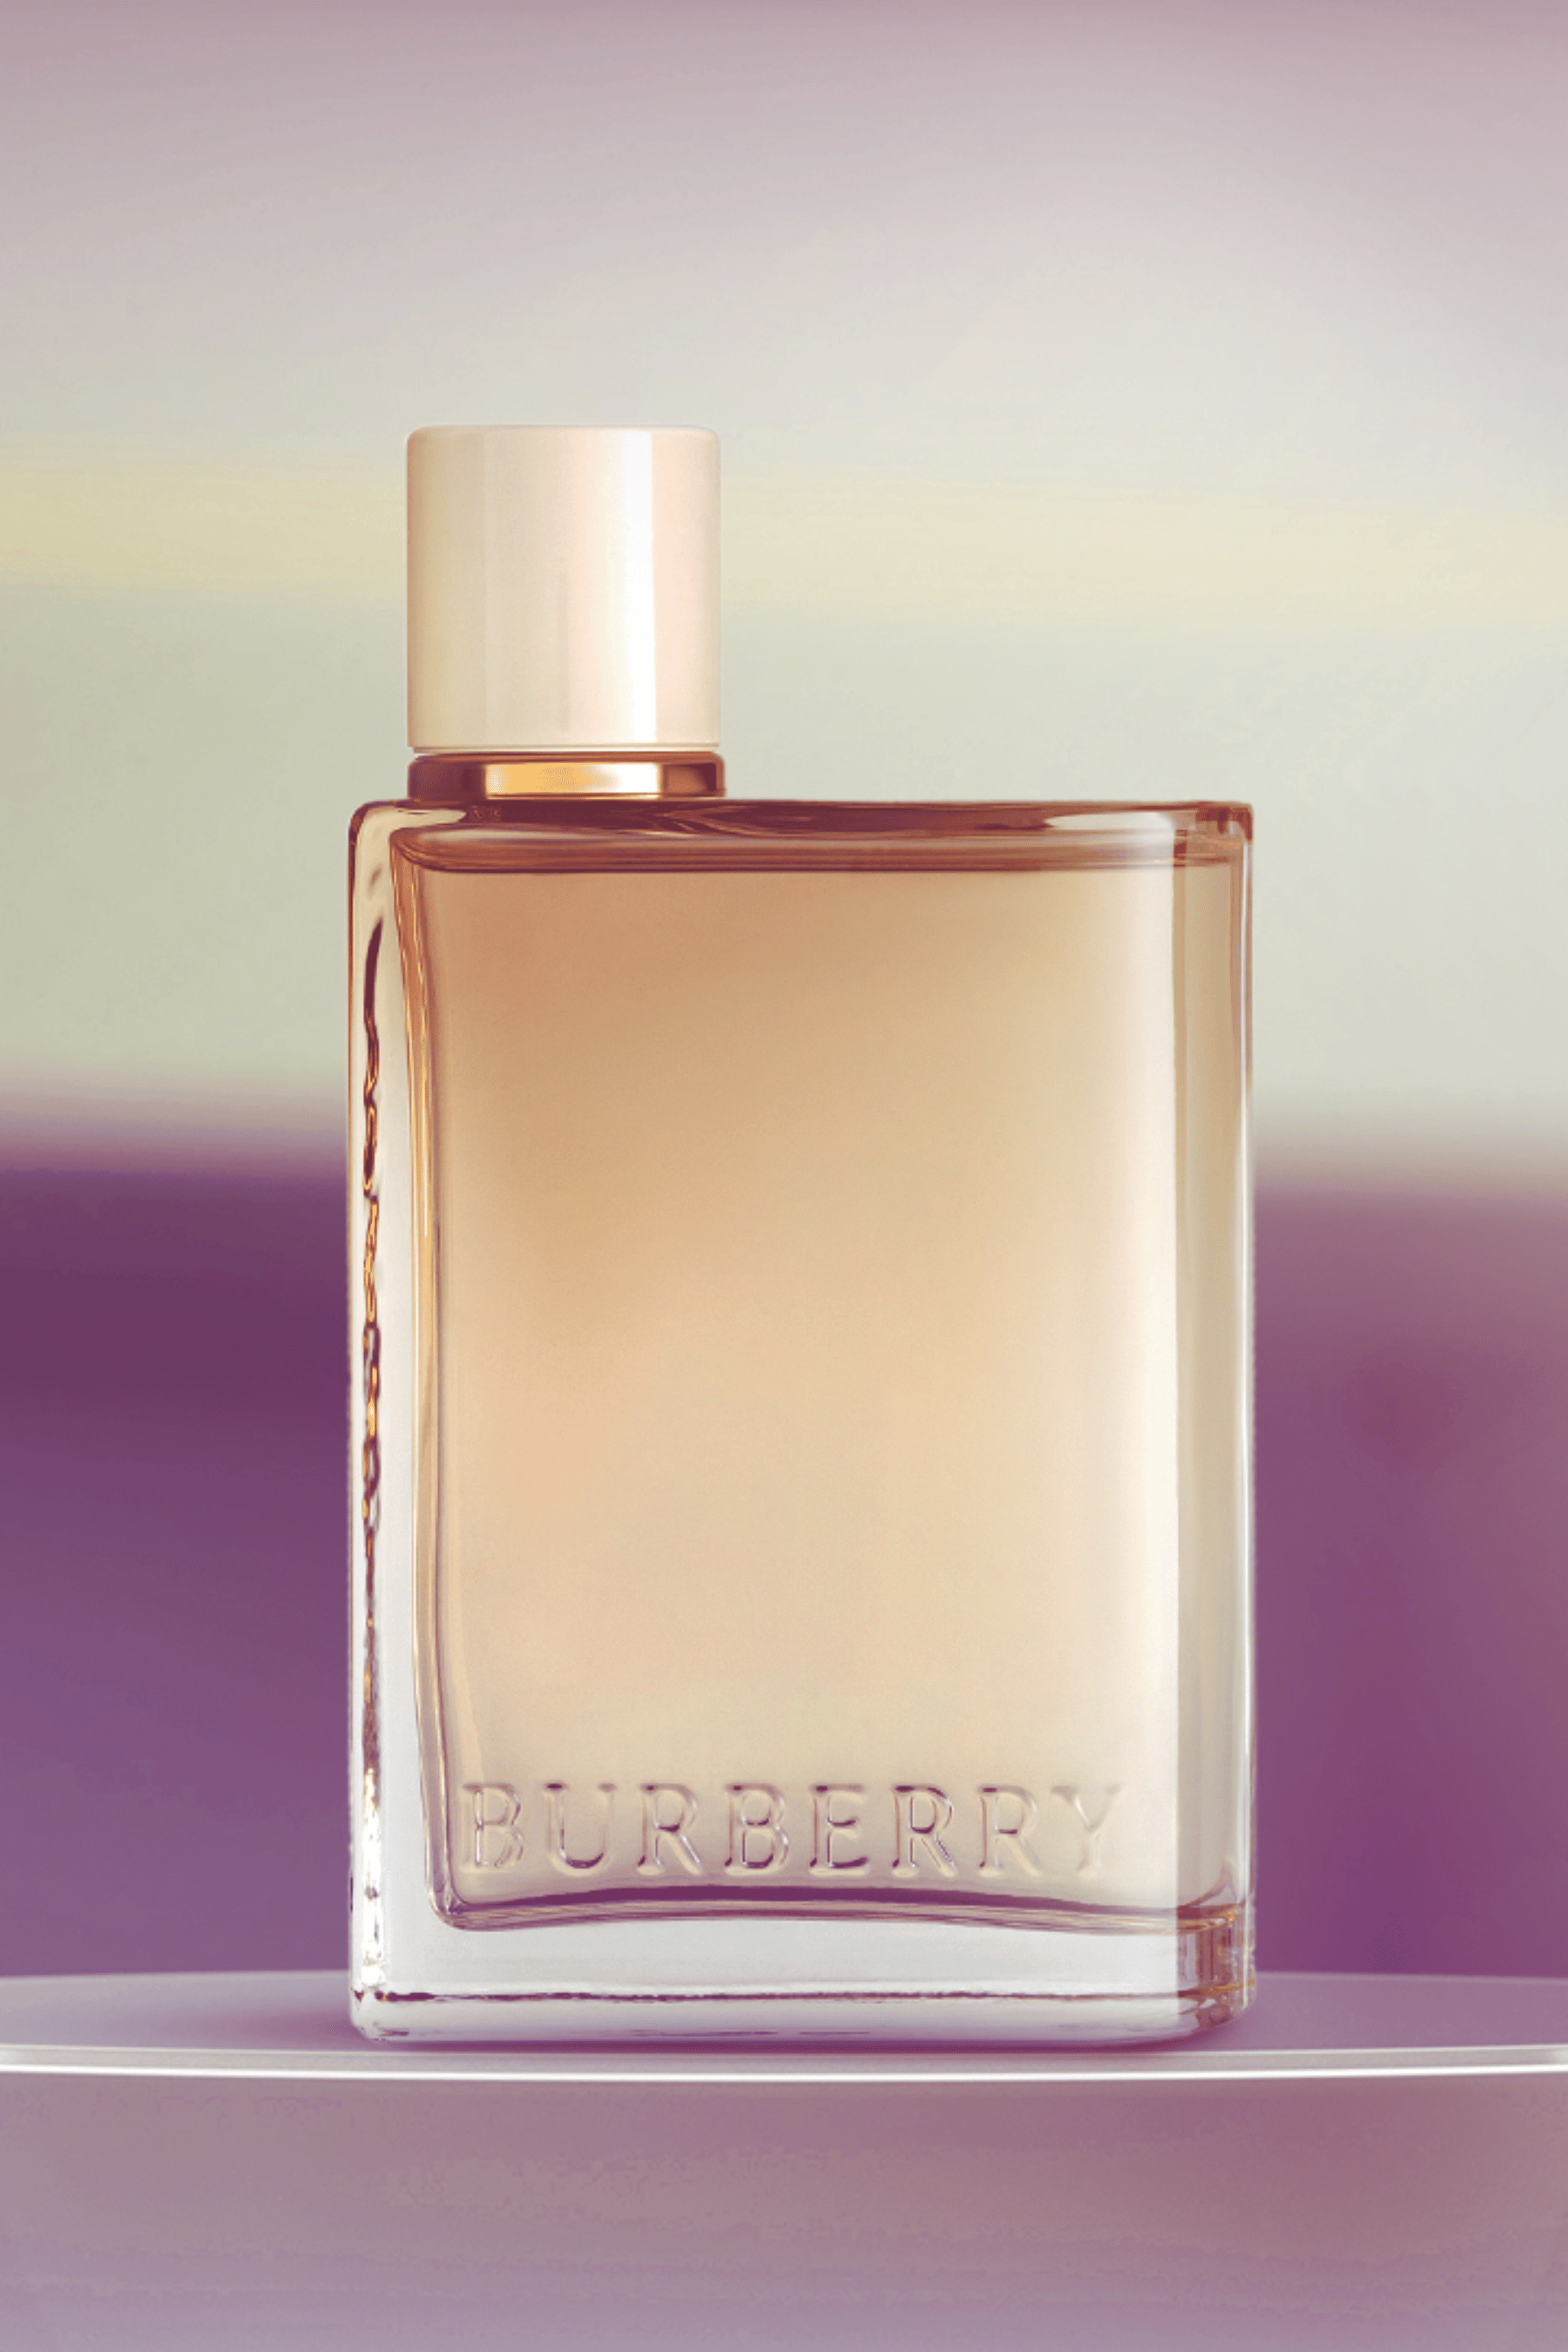 Burberry Her London Dream Eau de Parfum by Burberry